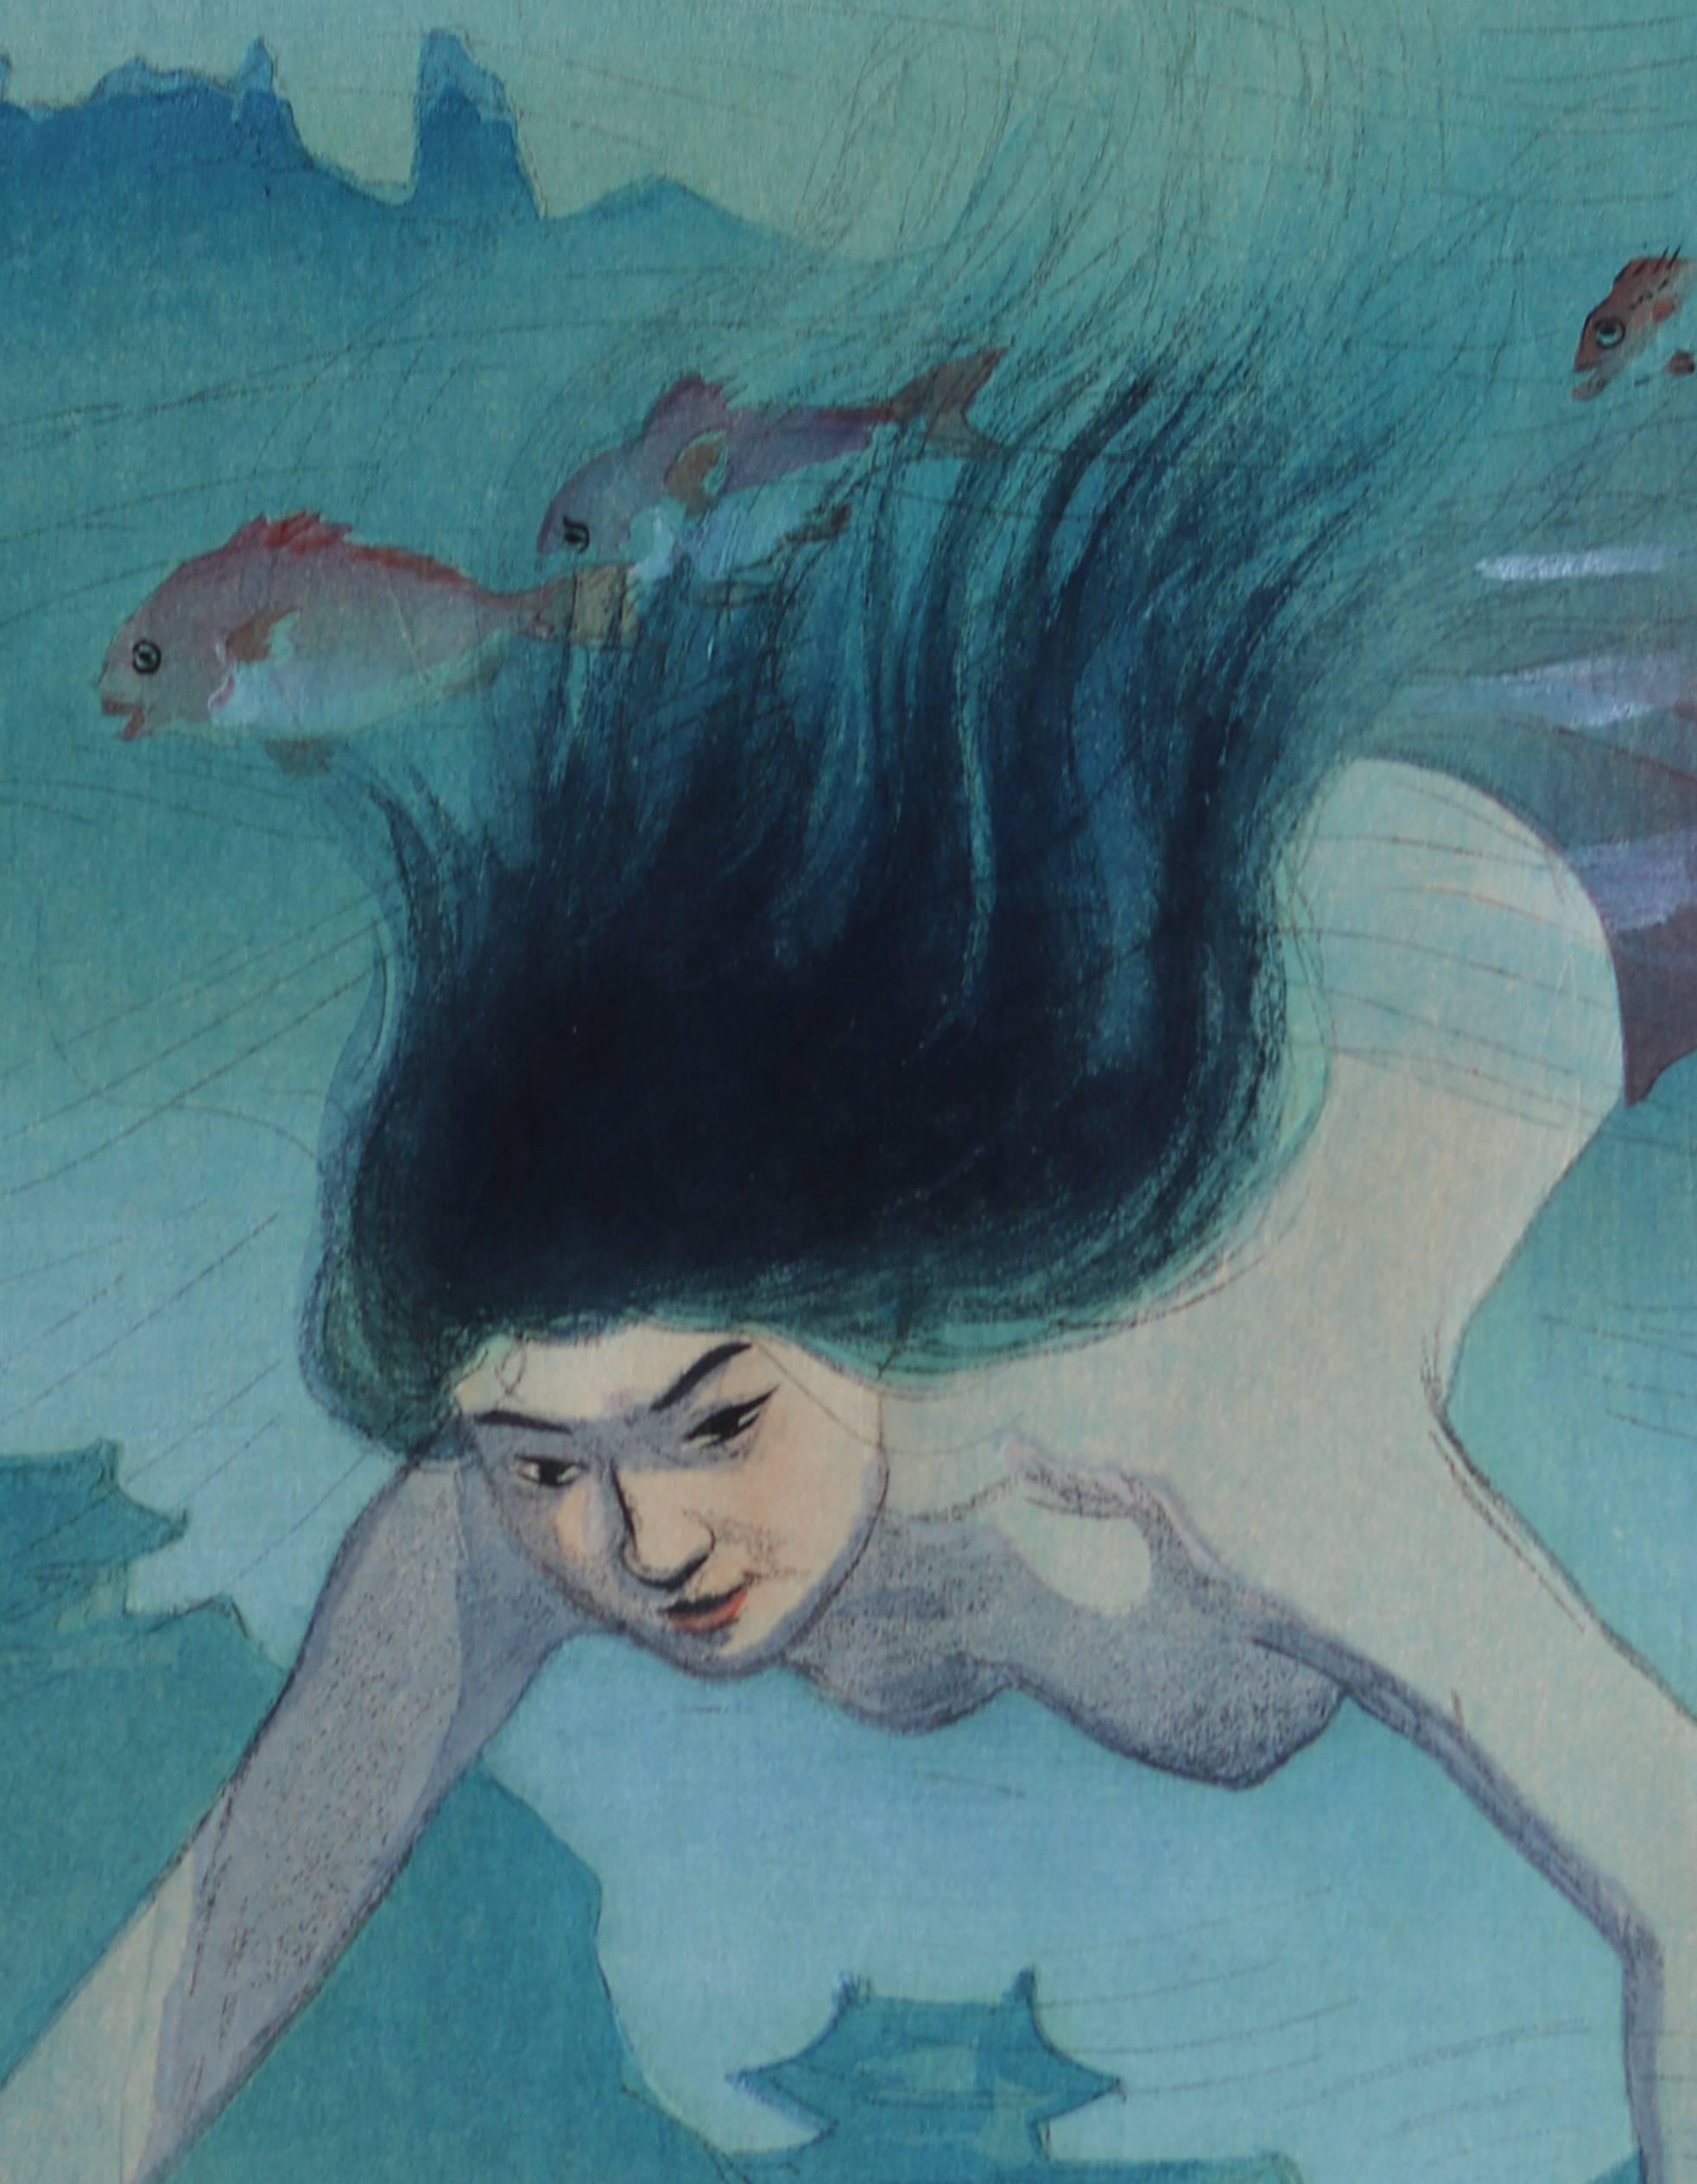 Beauty Diving Underwater - Showa Print by Nakazawa Hiromitsu